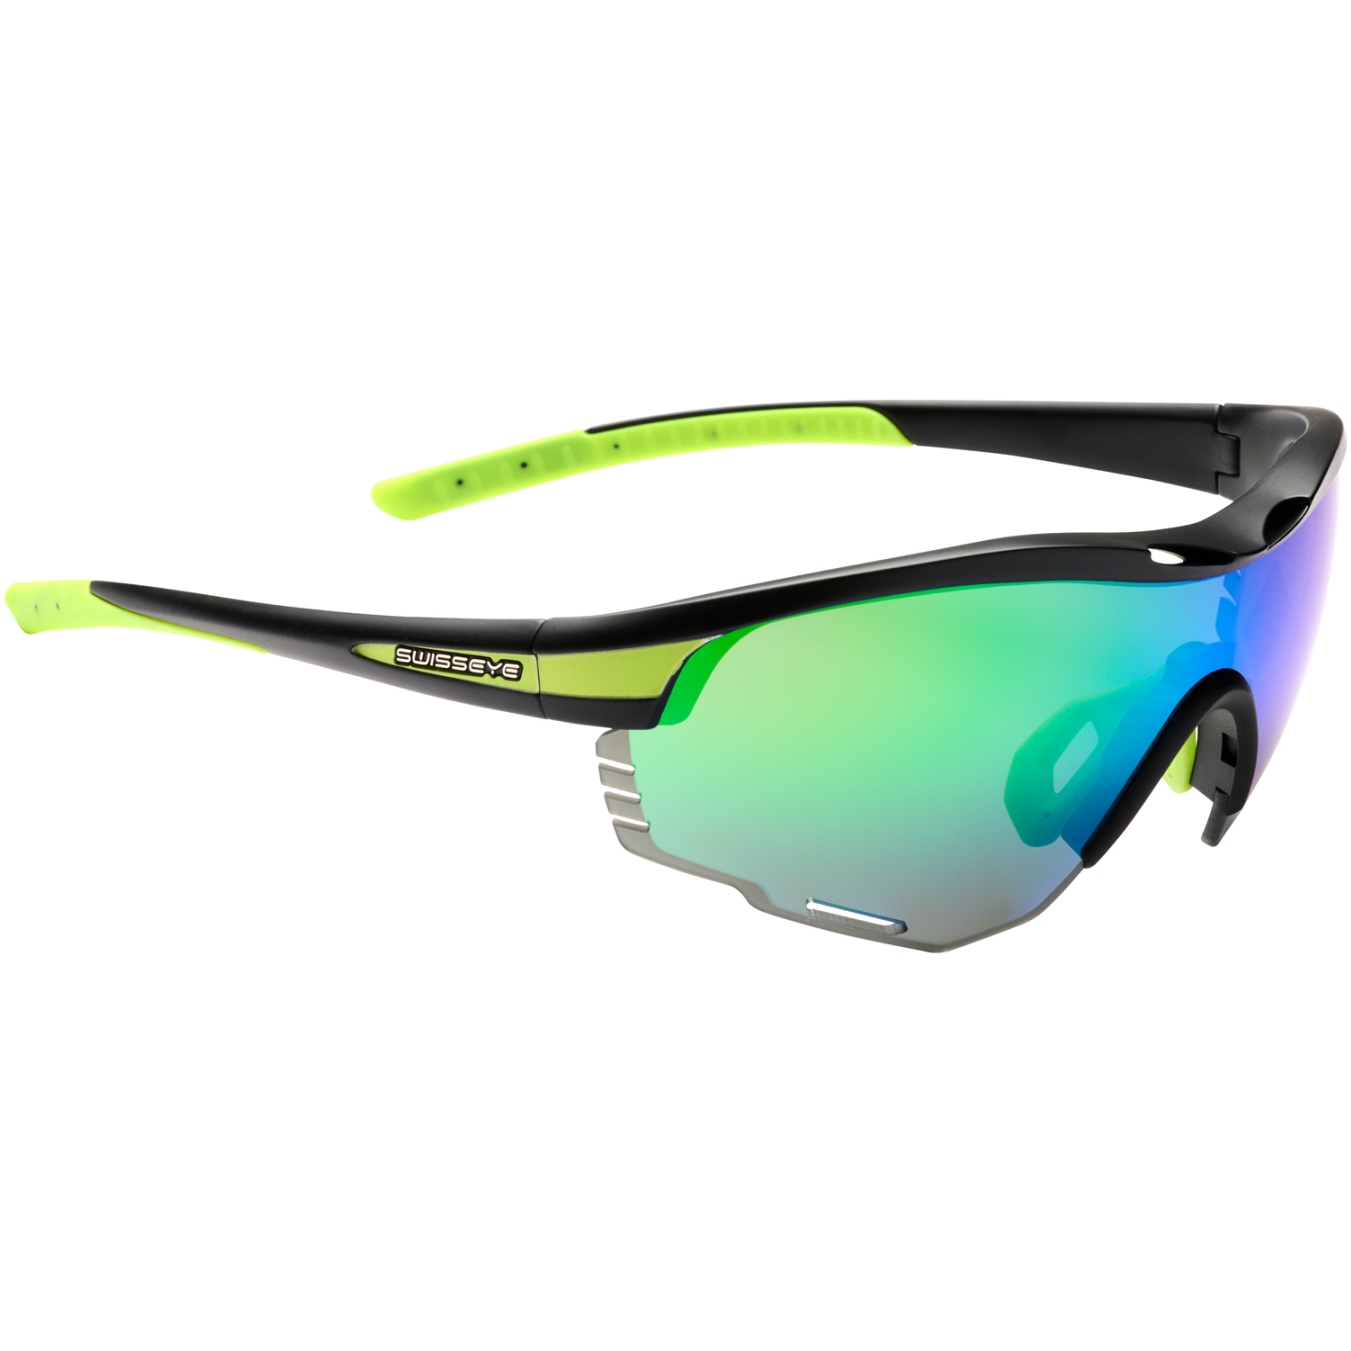 Produktbild von Swiss Eye Novena Re+ RX Brille - Black Matt / Green - Green Green Revo + Orange + Clear 14562RX